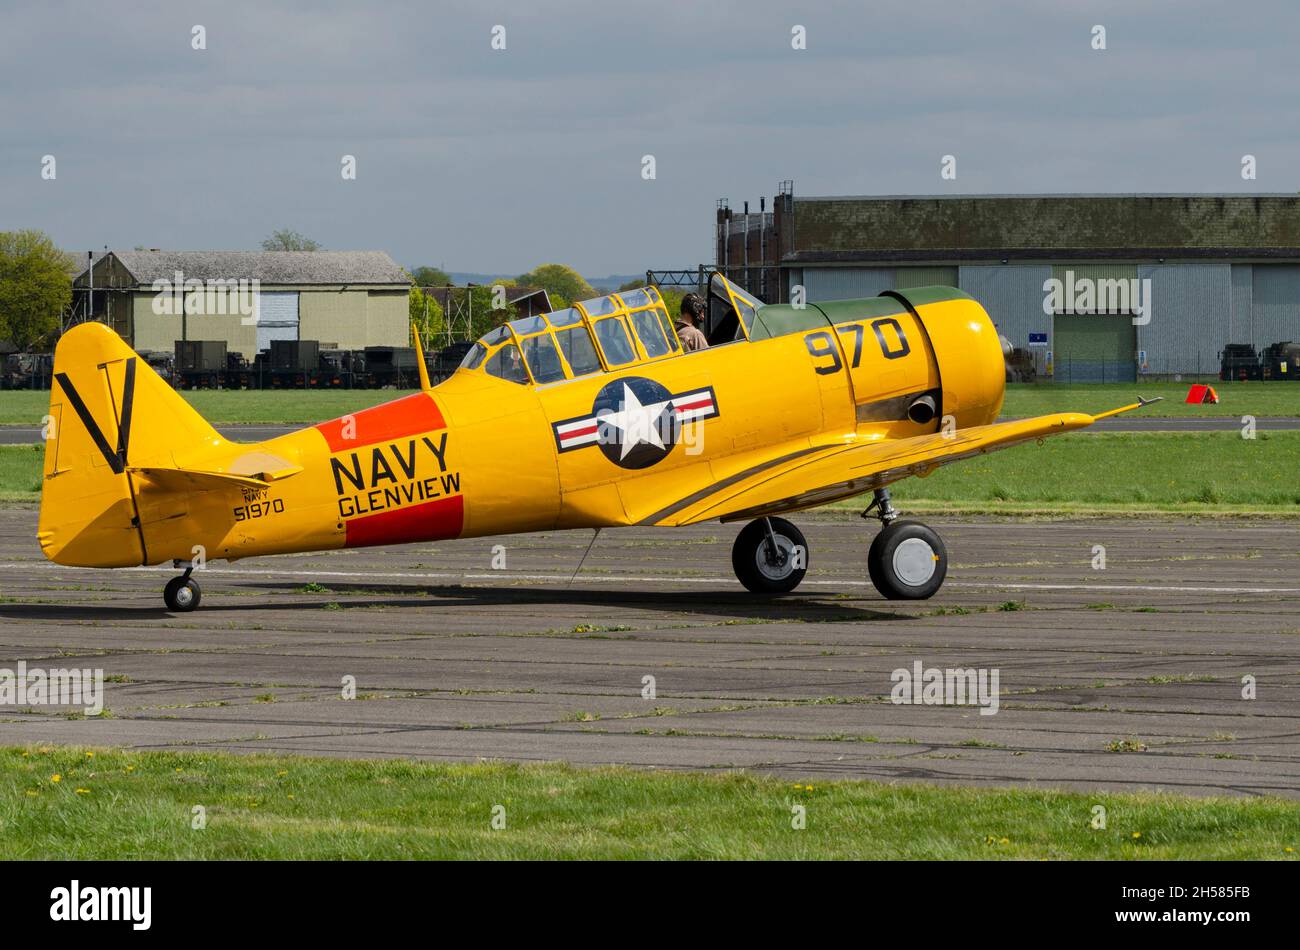 North American T-6 Texan G-TXAN, Harvard, avion d'entraînement de la deuxième Guerre mondiale à Dalton Barracks, anciennement RAF Abingdon, Royaume-Uni.Jeu de couleurs jaune de la marine américaine Banque D'Images